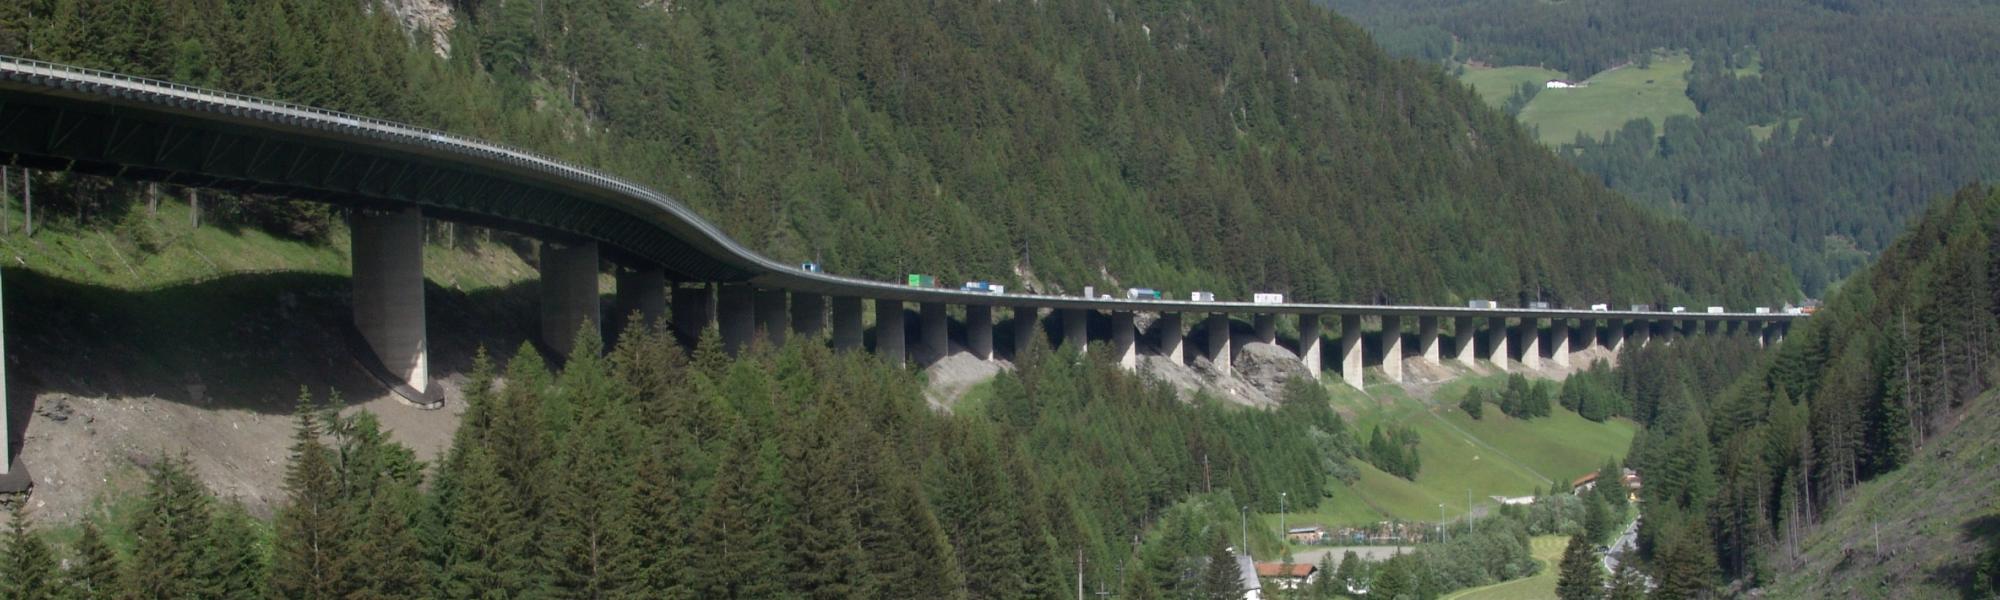 IRU calls for “Brenner Pass” deal suspension, IRU